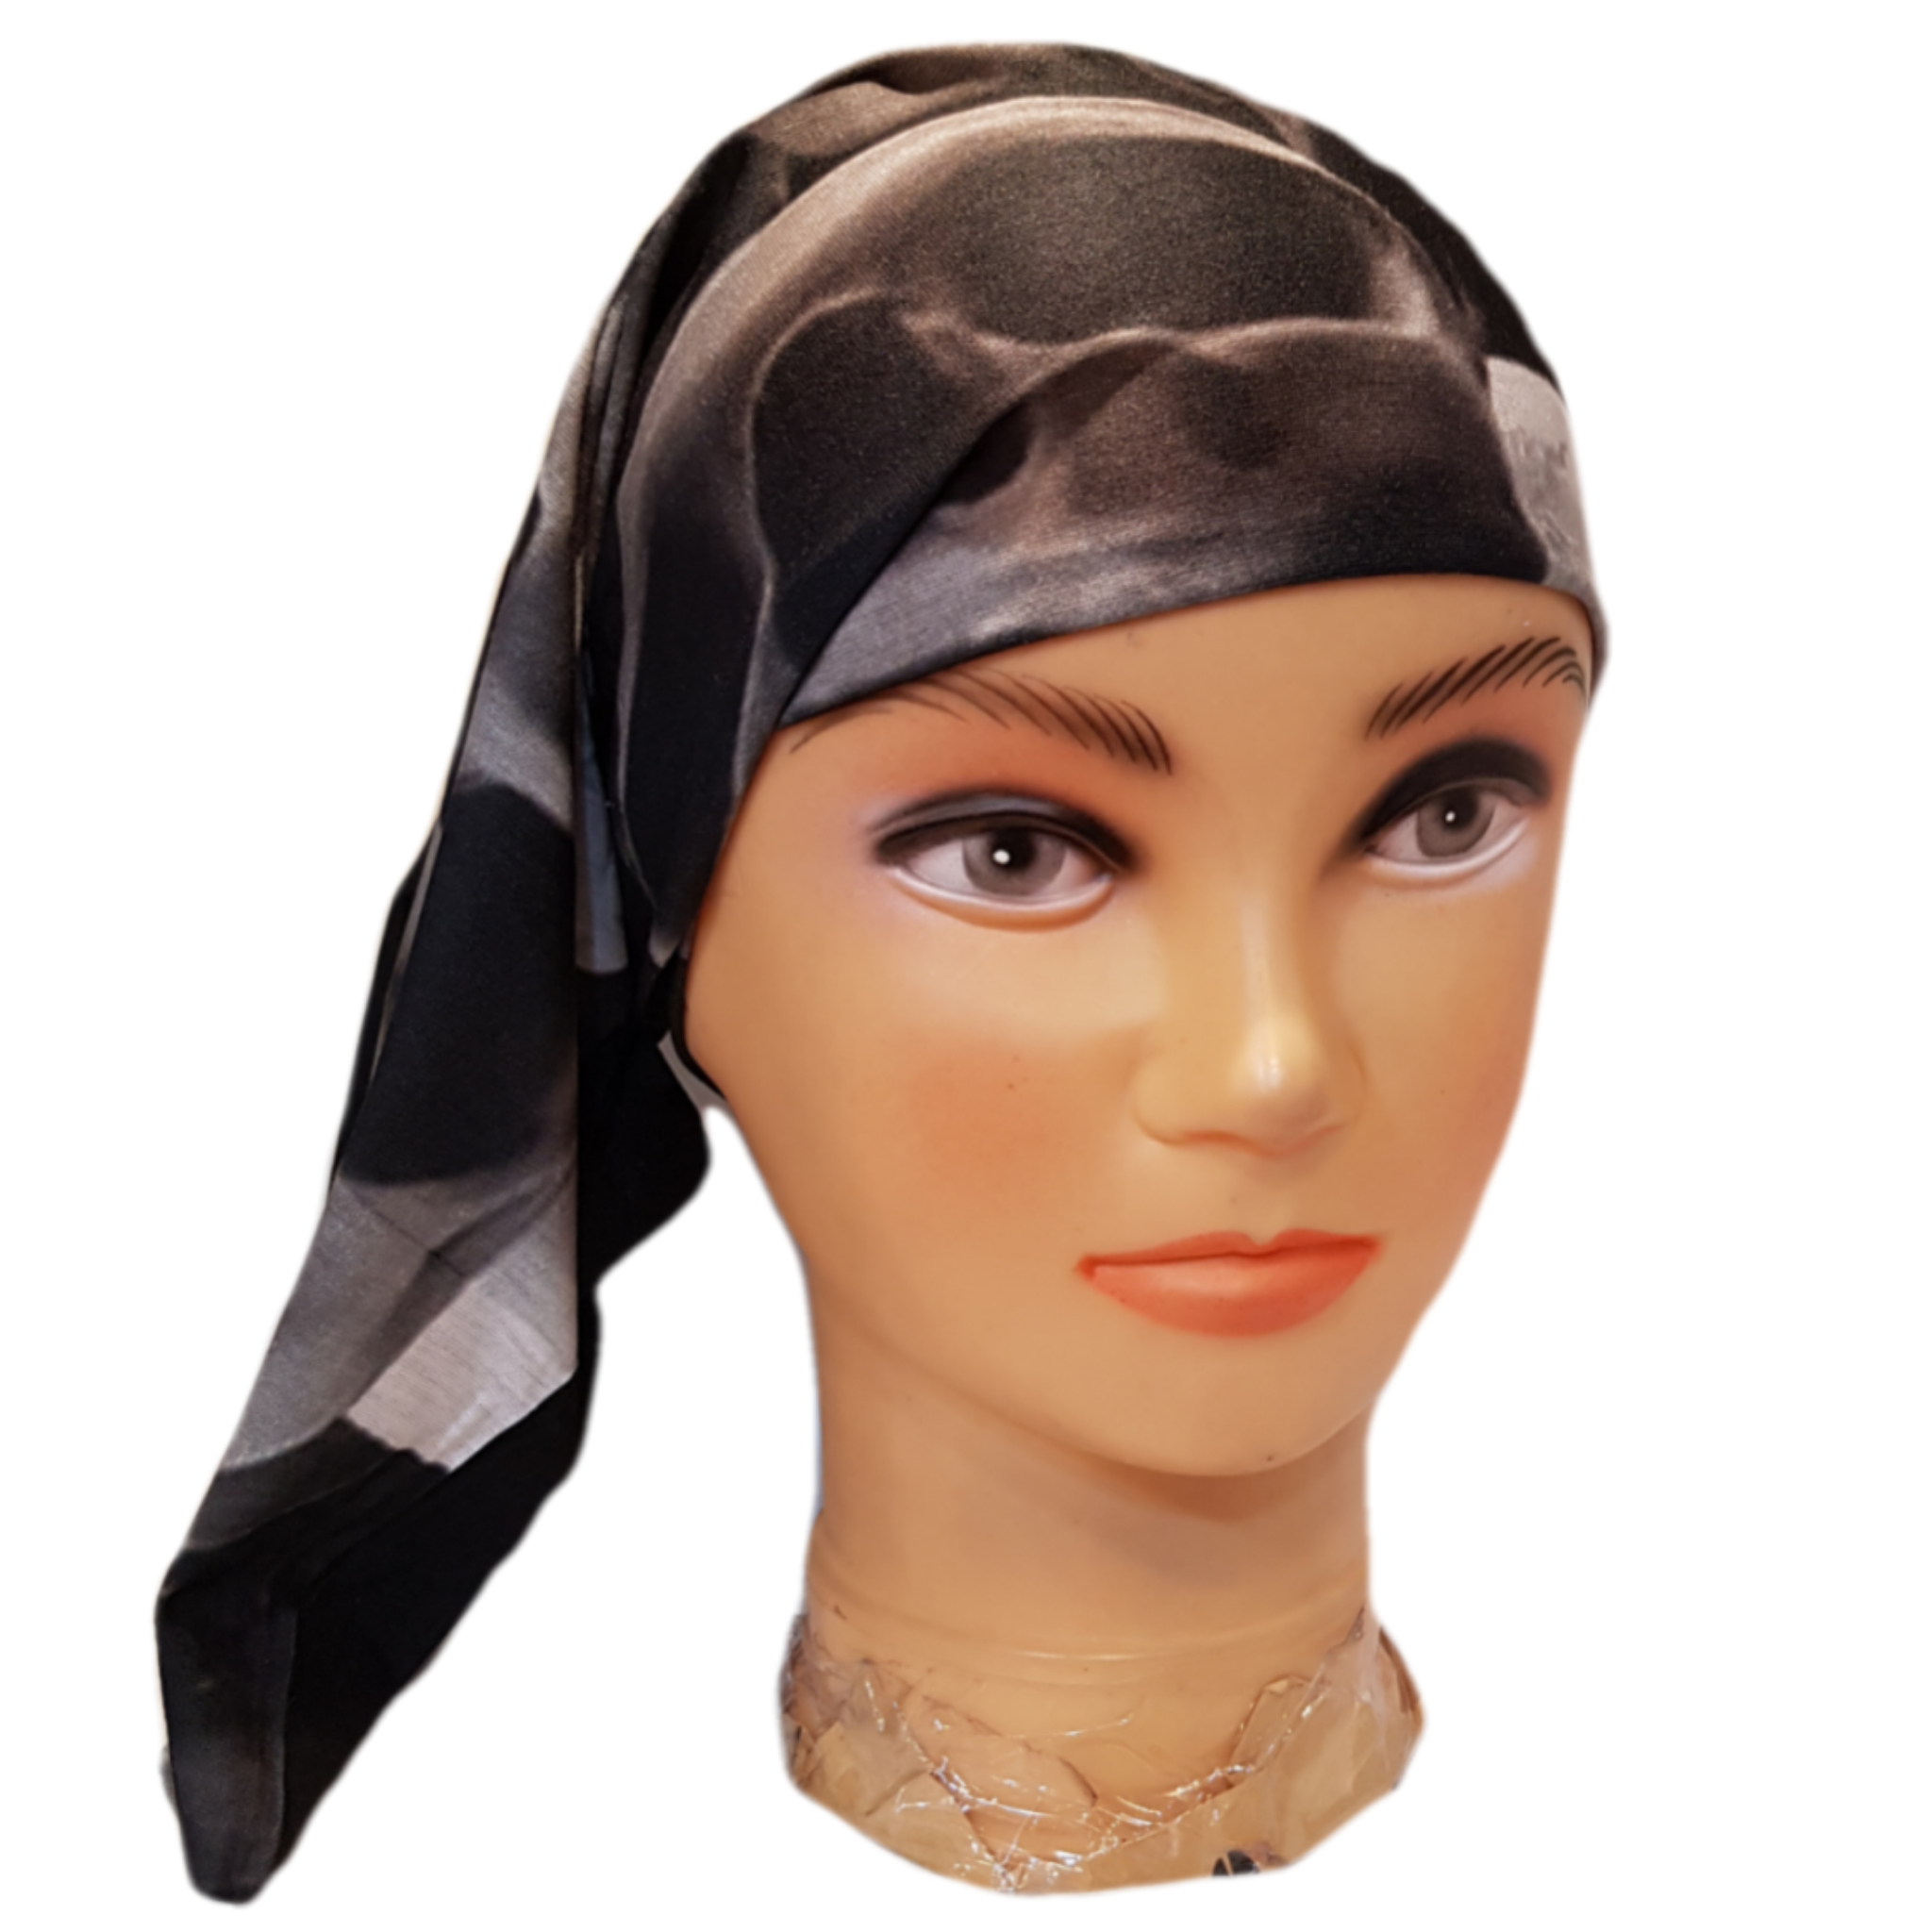 دستمال سر و گردن مدل اسکلتRokh17